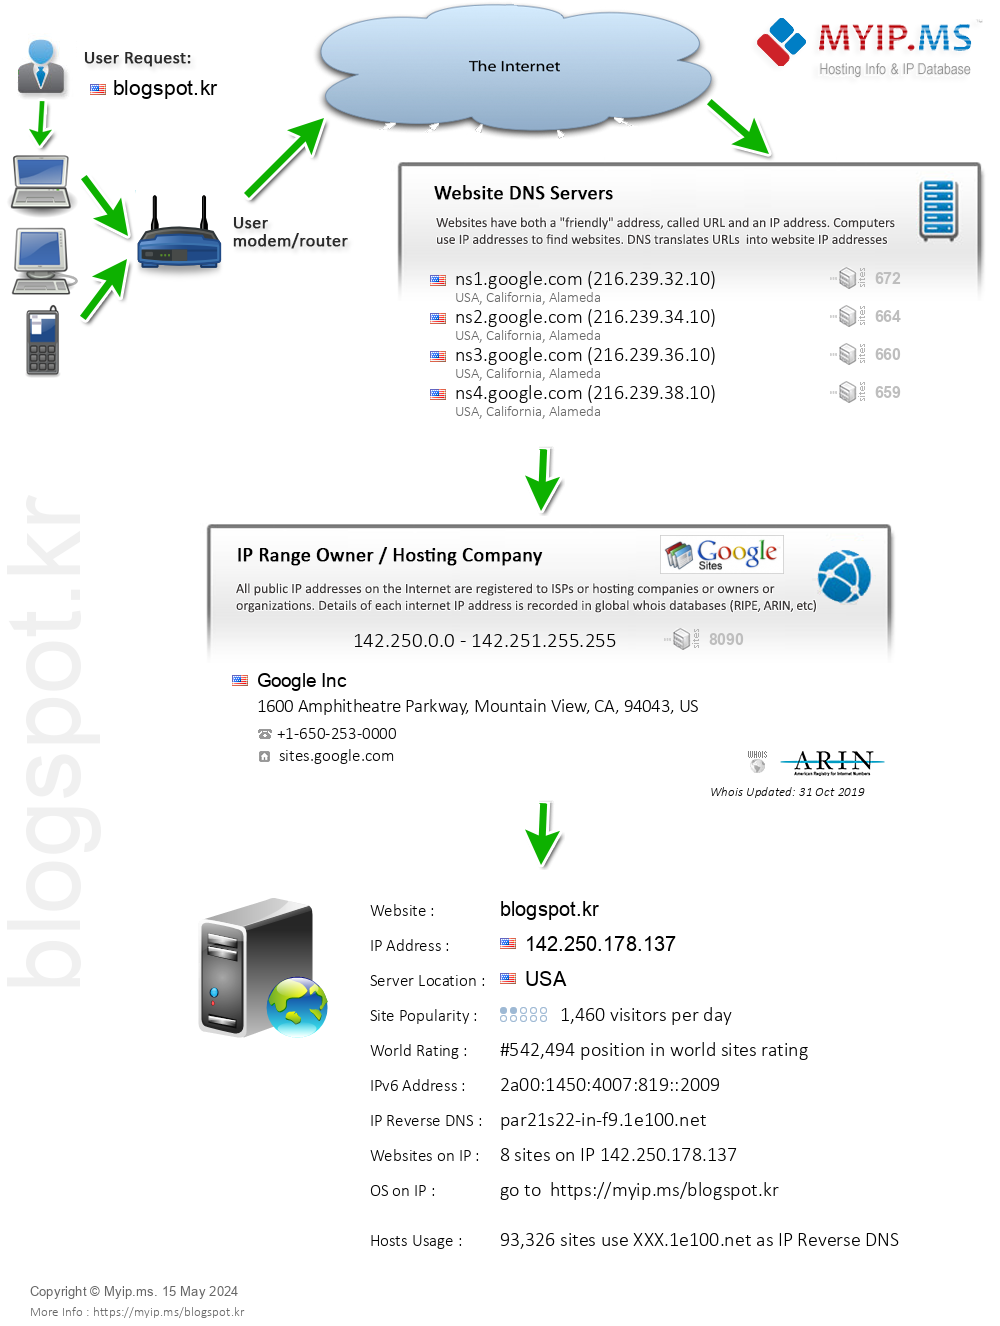 Blogspot.kr - Website Hosting Visual IP Diagram